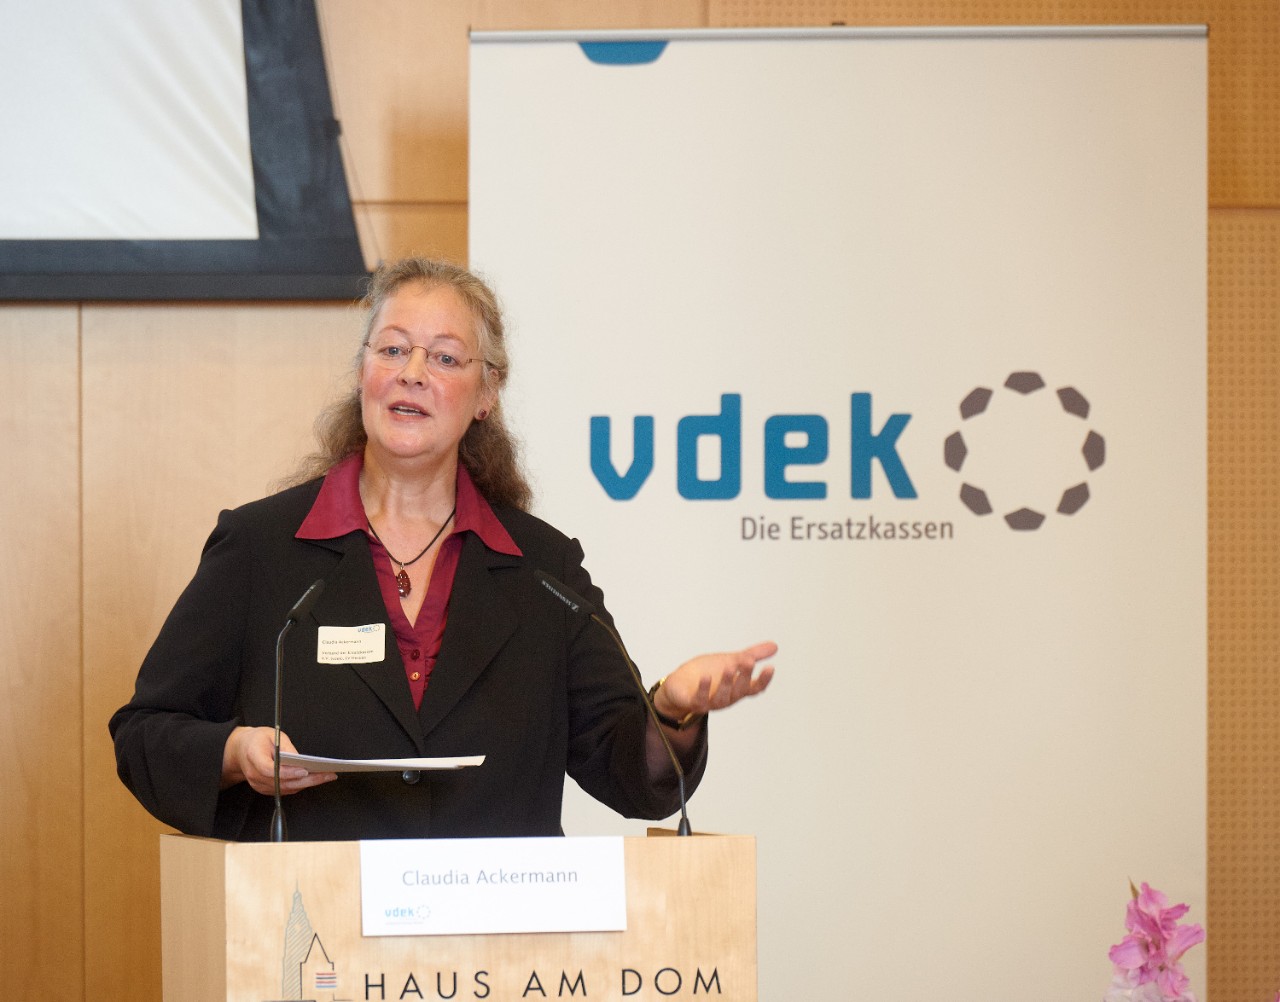 Claudia Ackermann, Leiterin der vdek-Landesvertretung Hessen, am Rednerpult